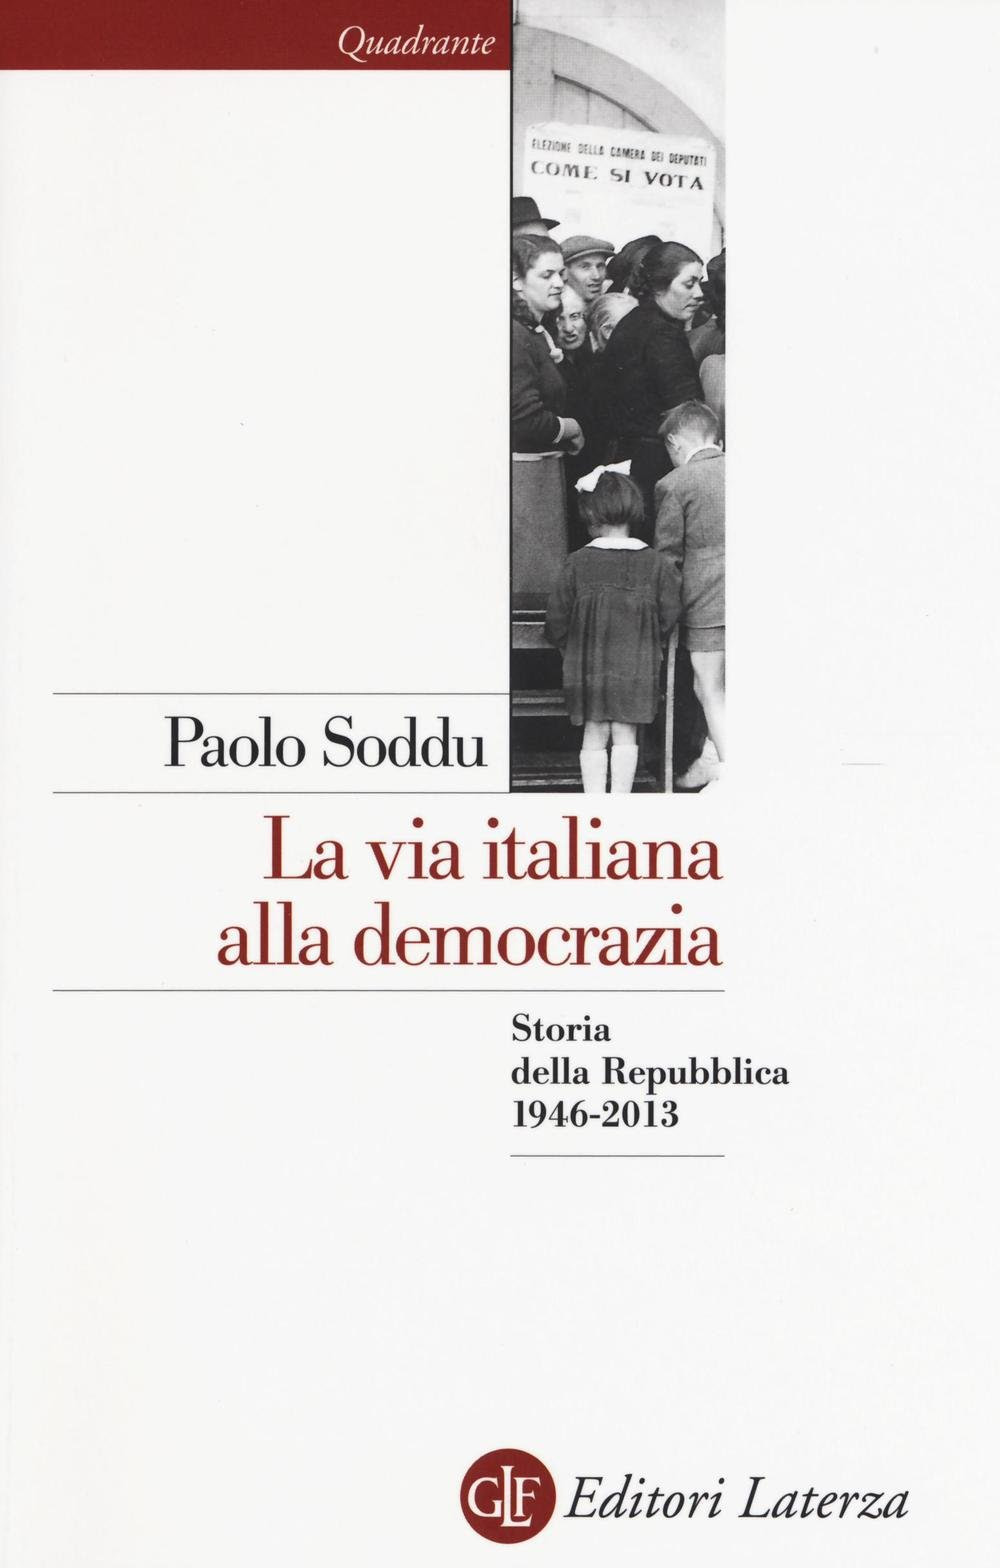 La via italiana alla democrazia: Storia della Repubblica 1946-2013 in Kindle/PDF/EPUB